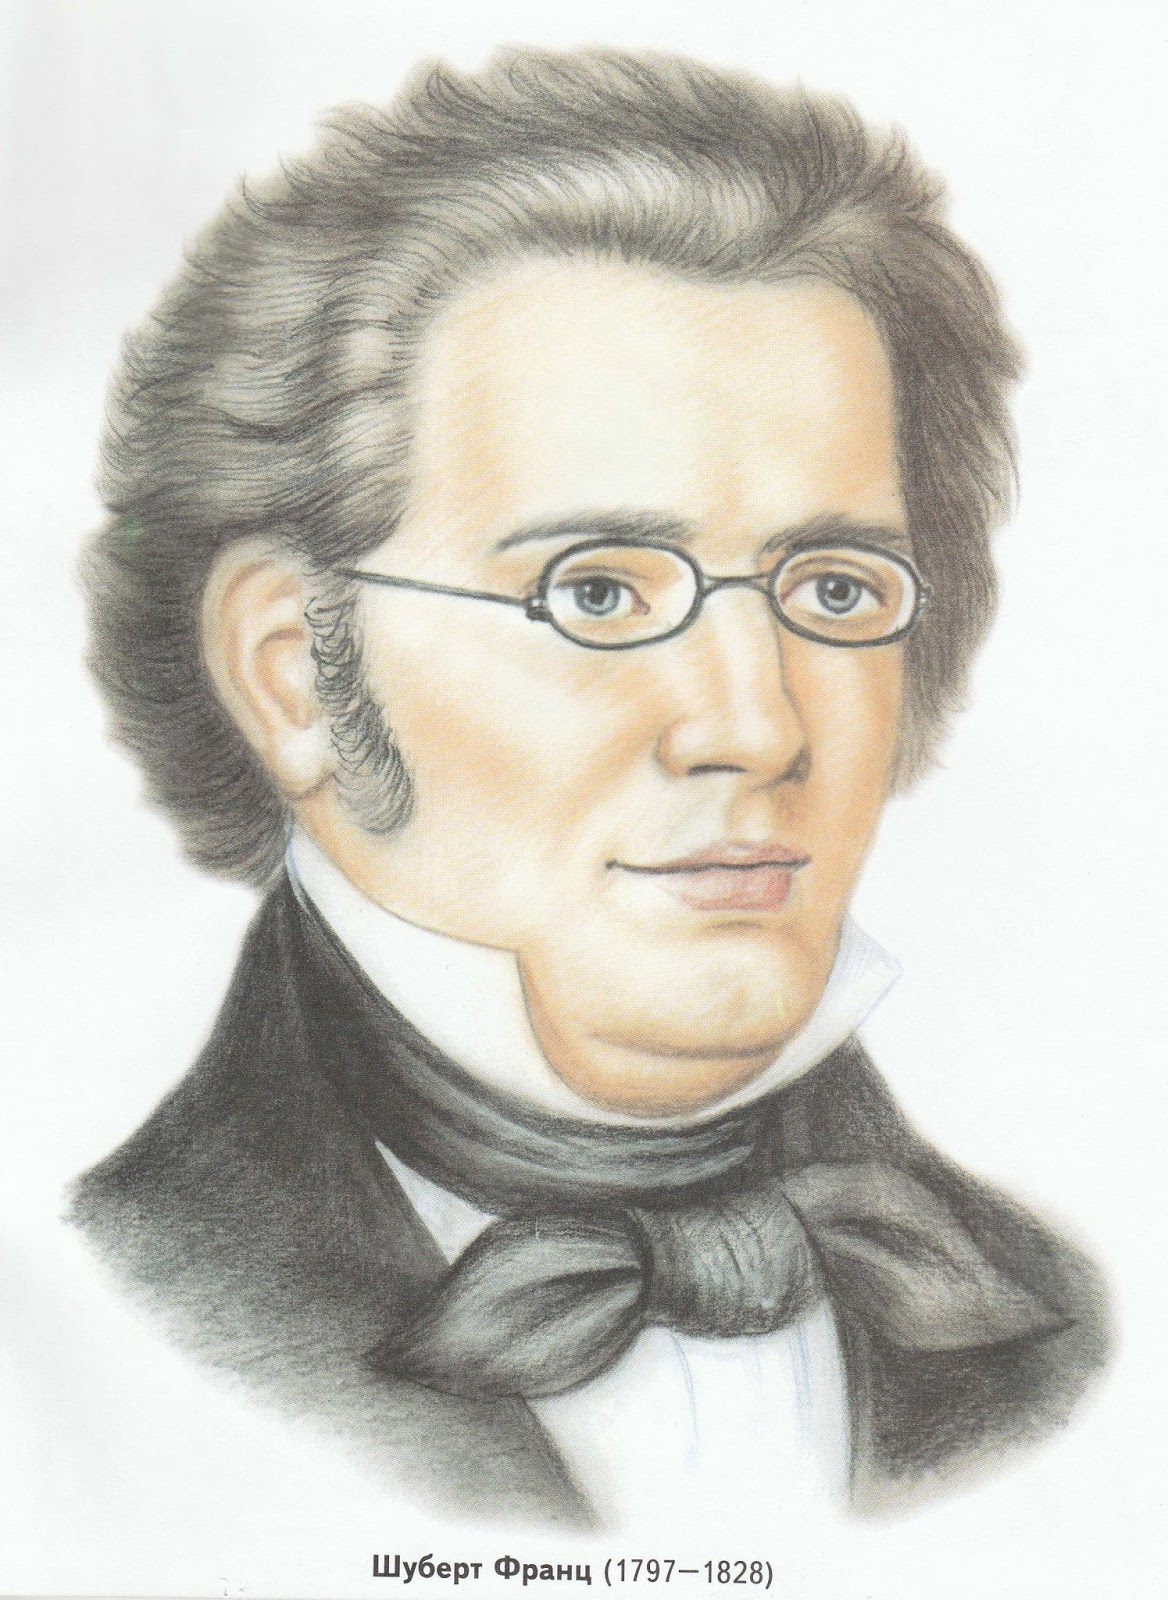 Детские композиторы. Франц Шуберт композиторы. Франц Шуберт (1797-1828). Шуберт (Schubert) Франц (1797-1828). Франц Шуберт портрет композитора.